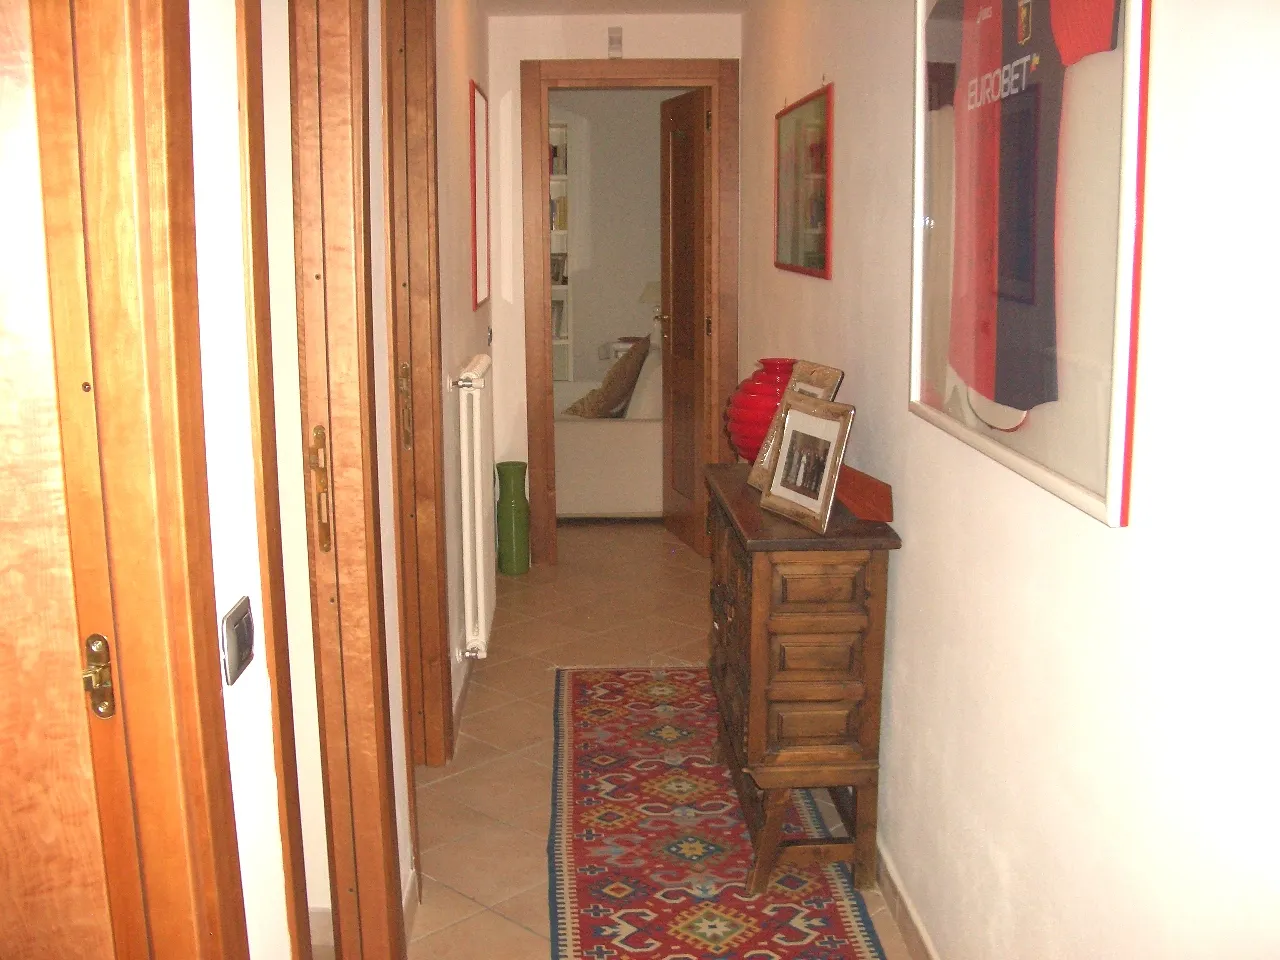 Hallway in five-room villa in Sanremo